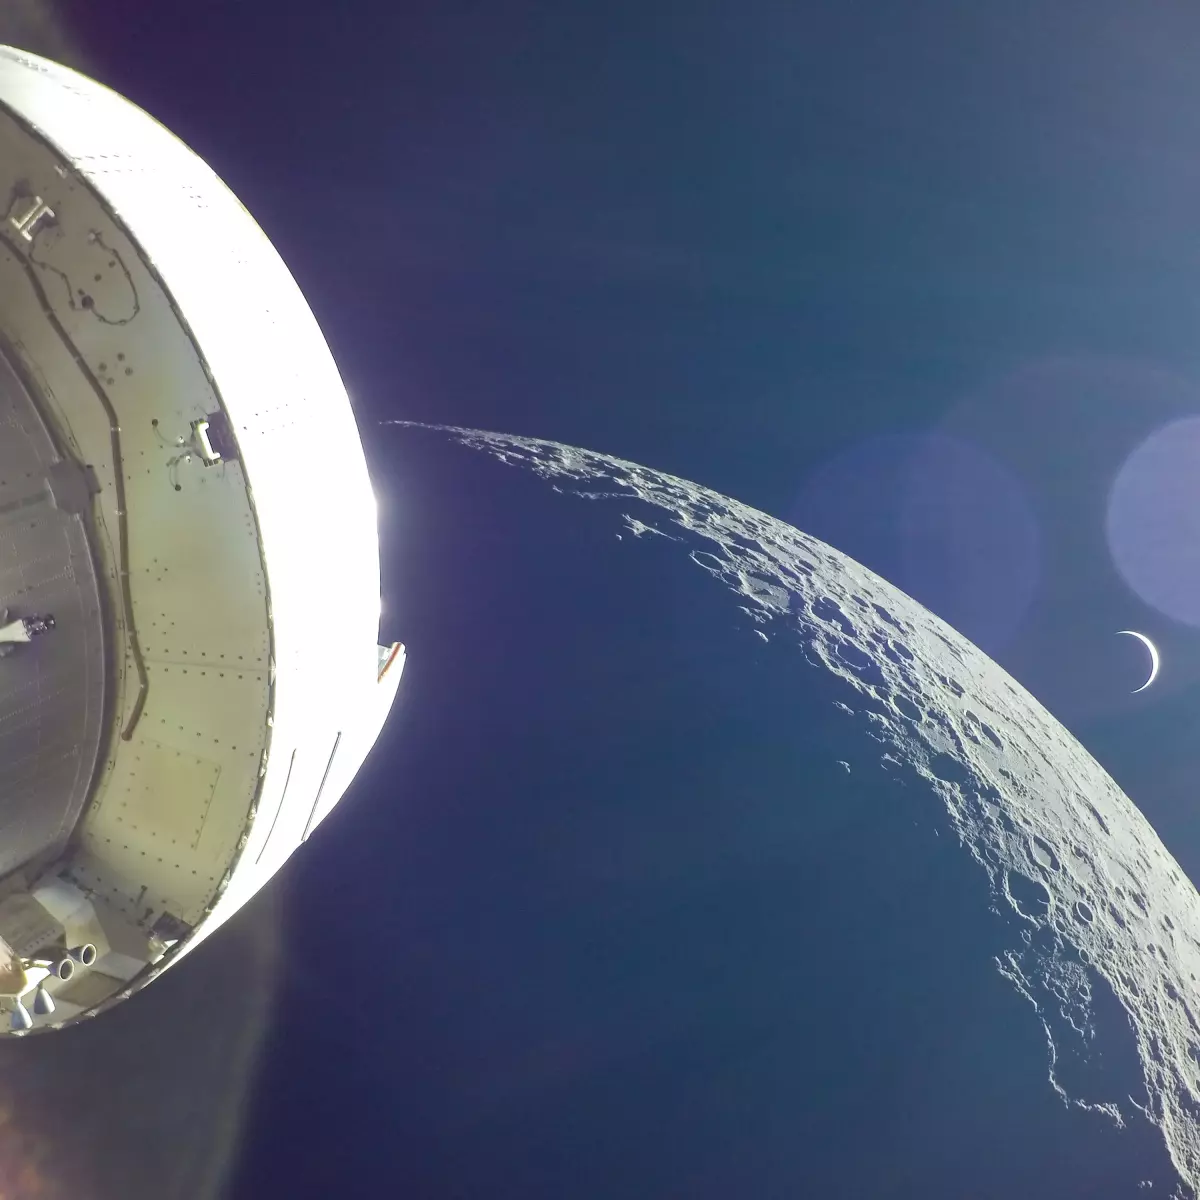 NASA tests moon elevator for Artemis III mission